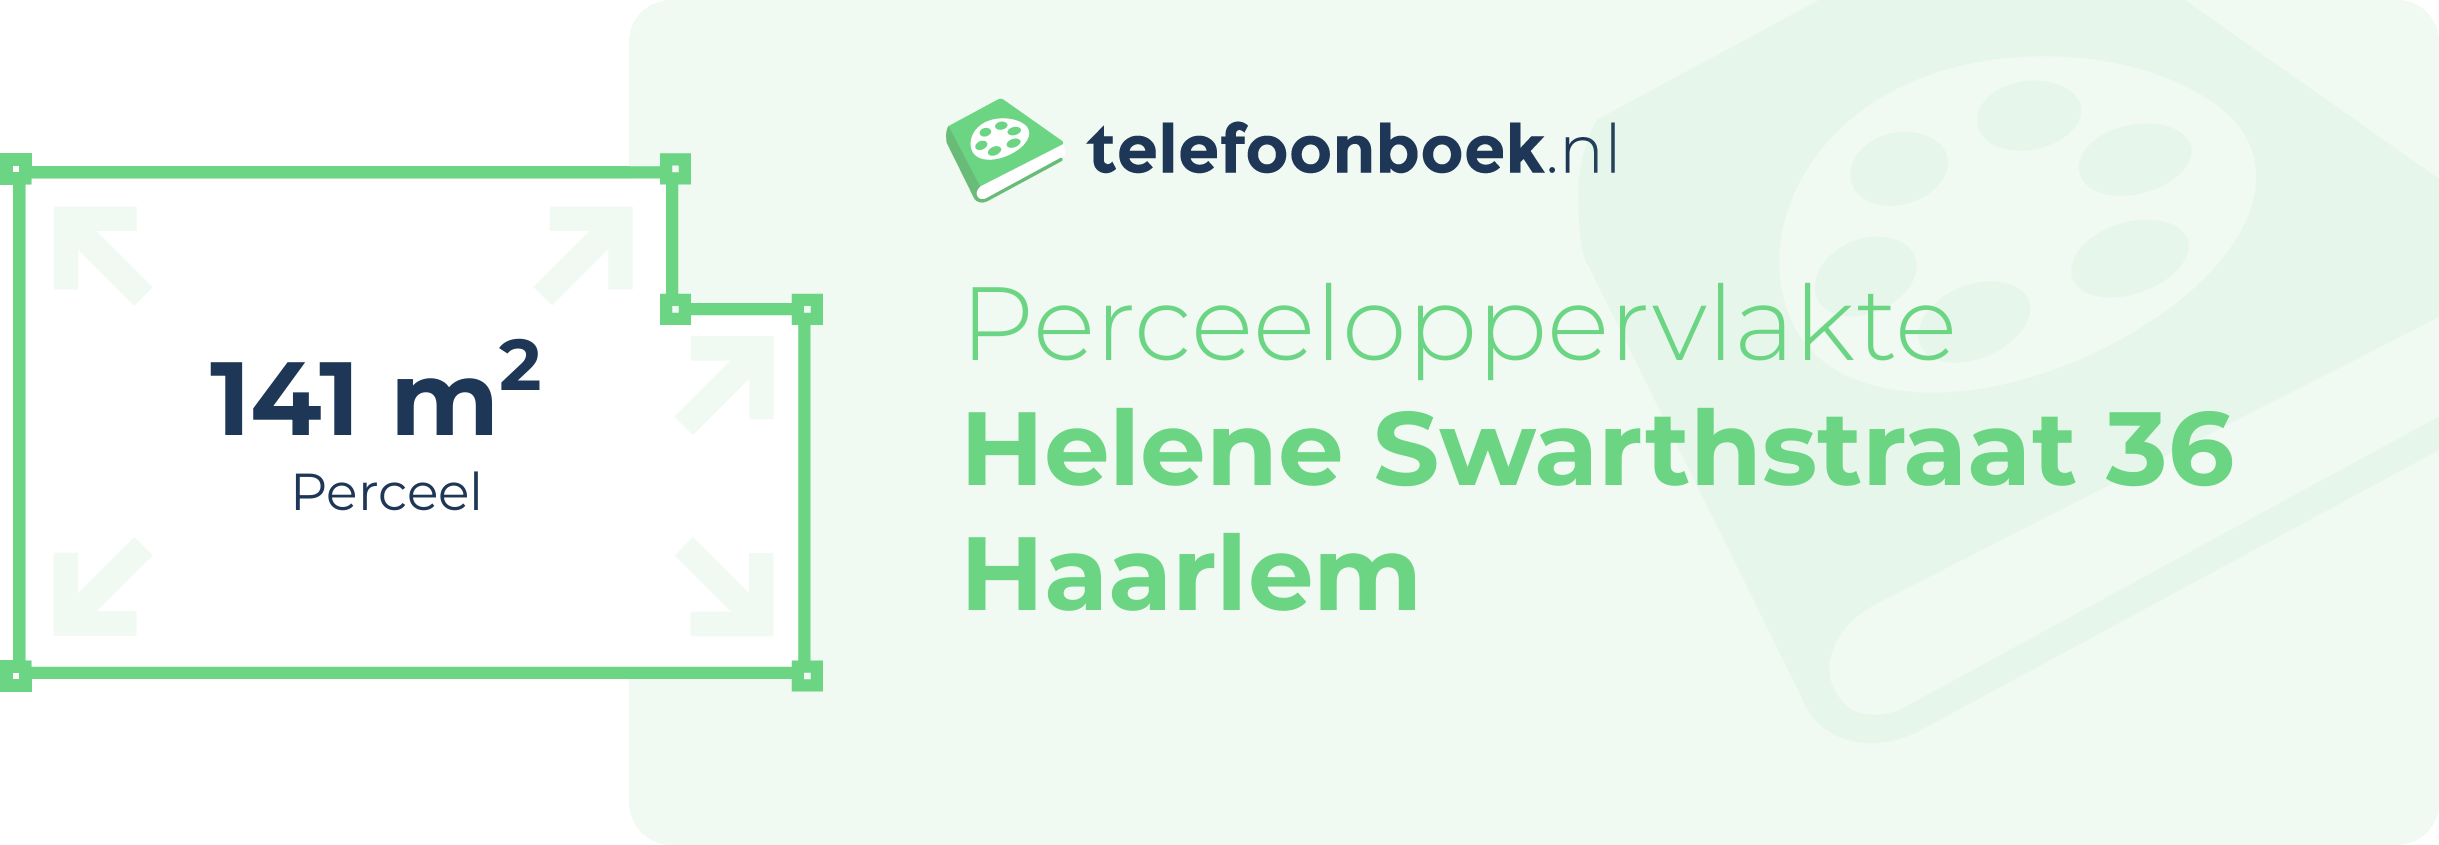 Perceeloppervlakte Helene Swarthstraat 36 Haarlem